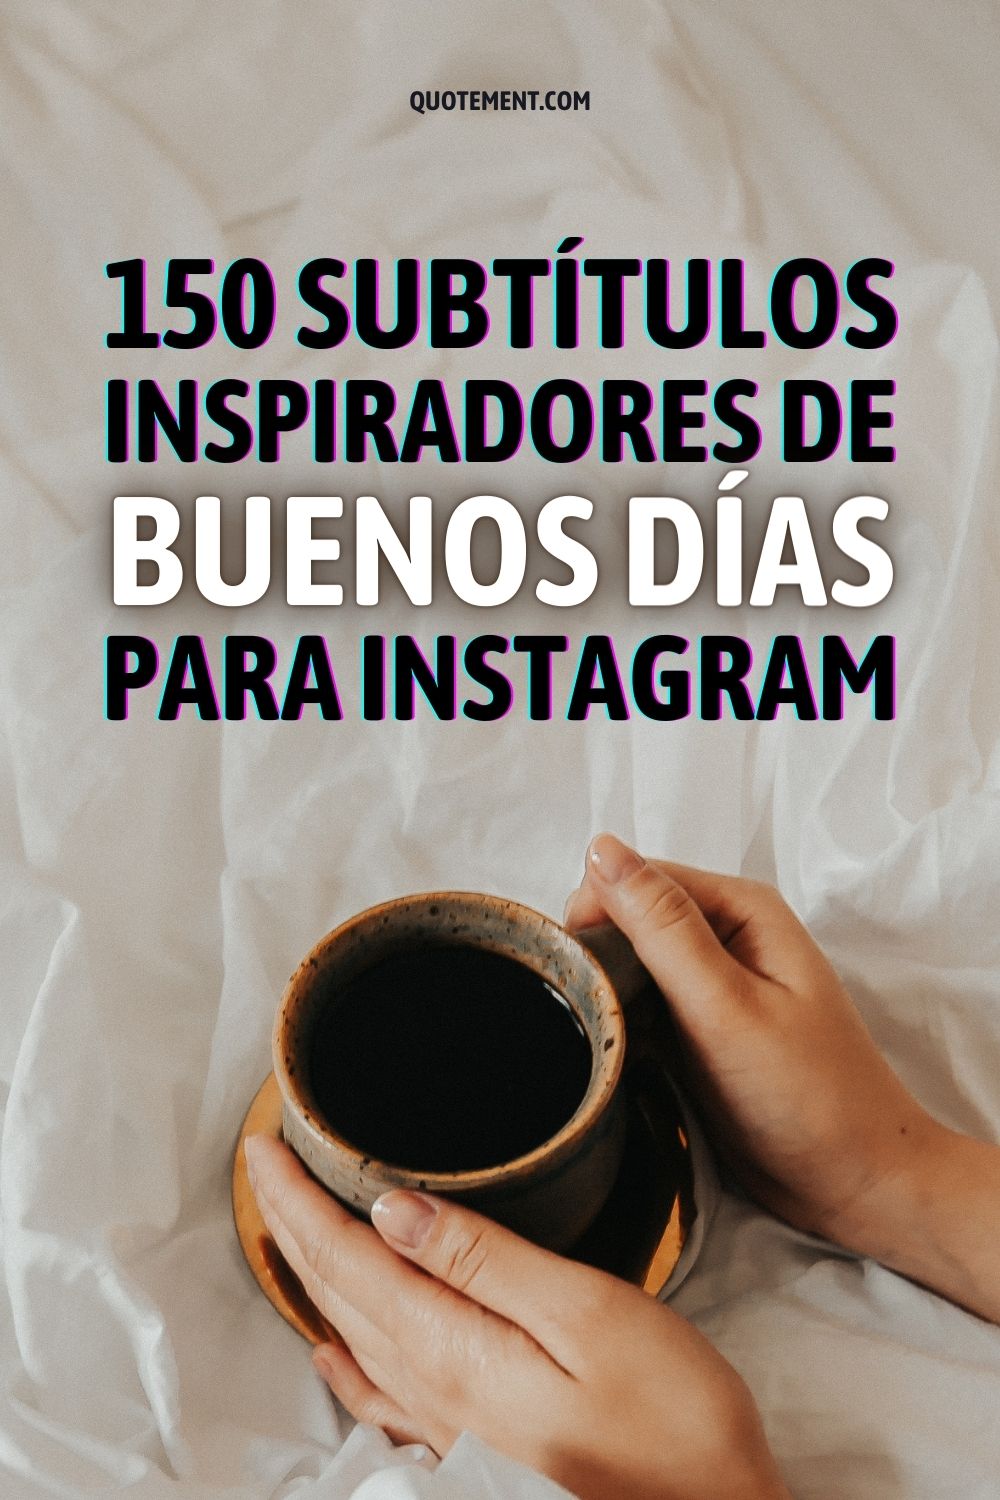 150 subtítulos inspiradores de buenos días para Instagram